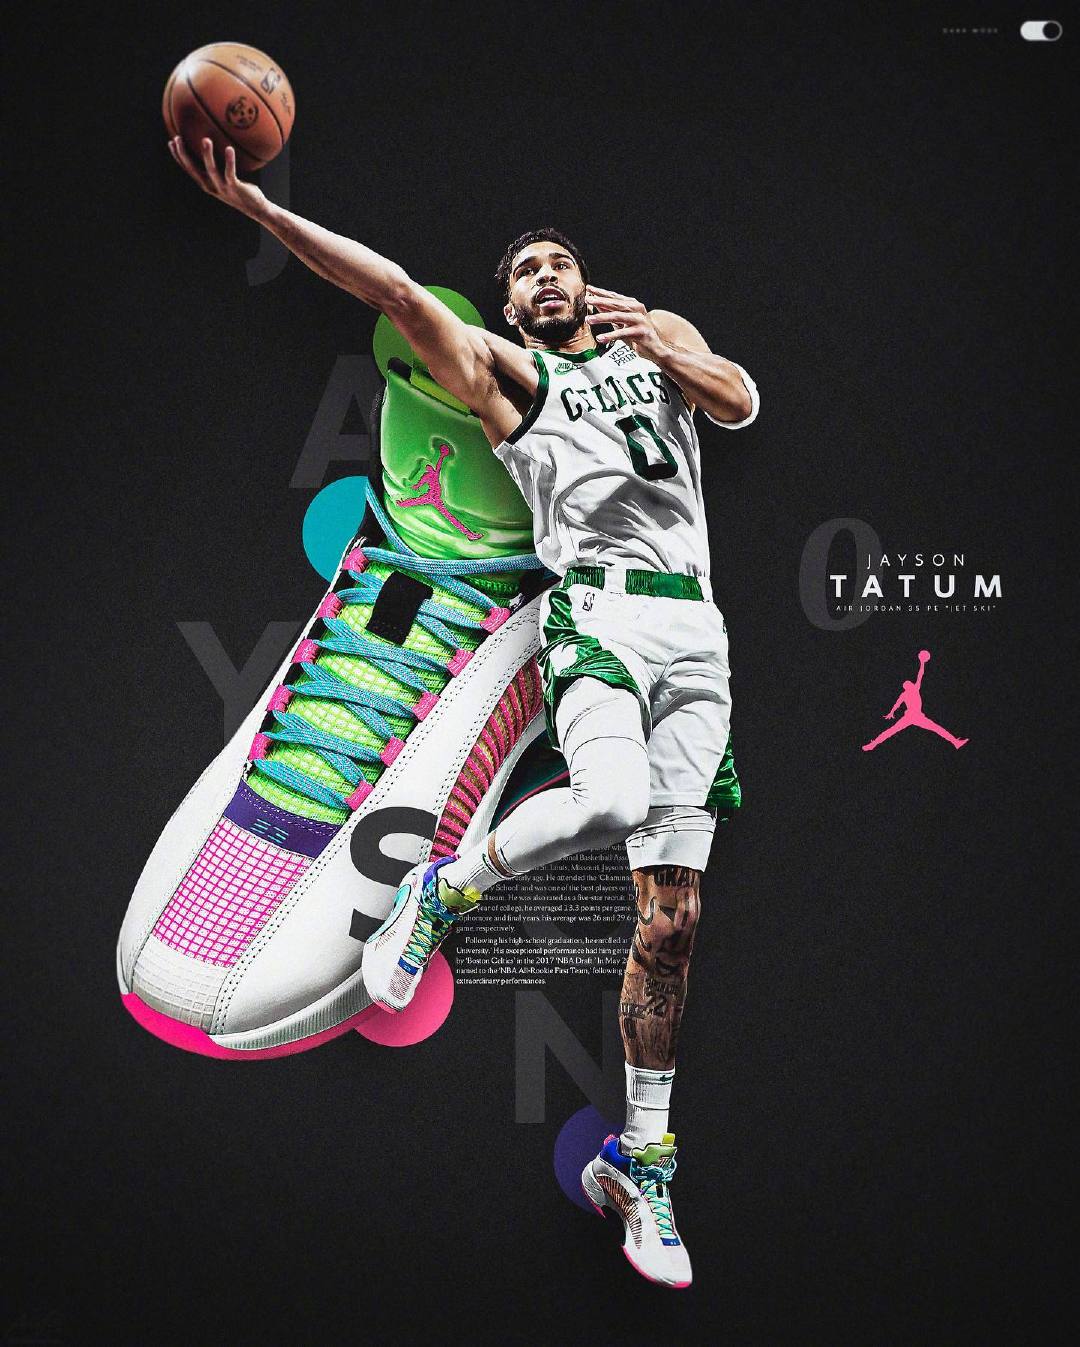 耐克海报篮球鞋图片